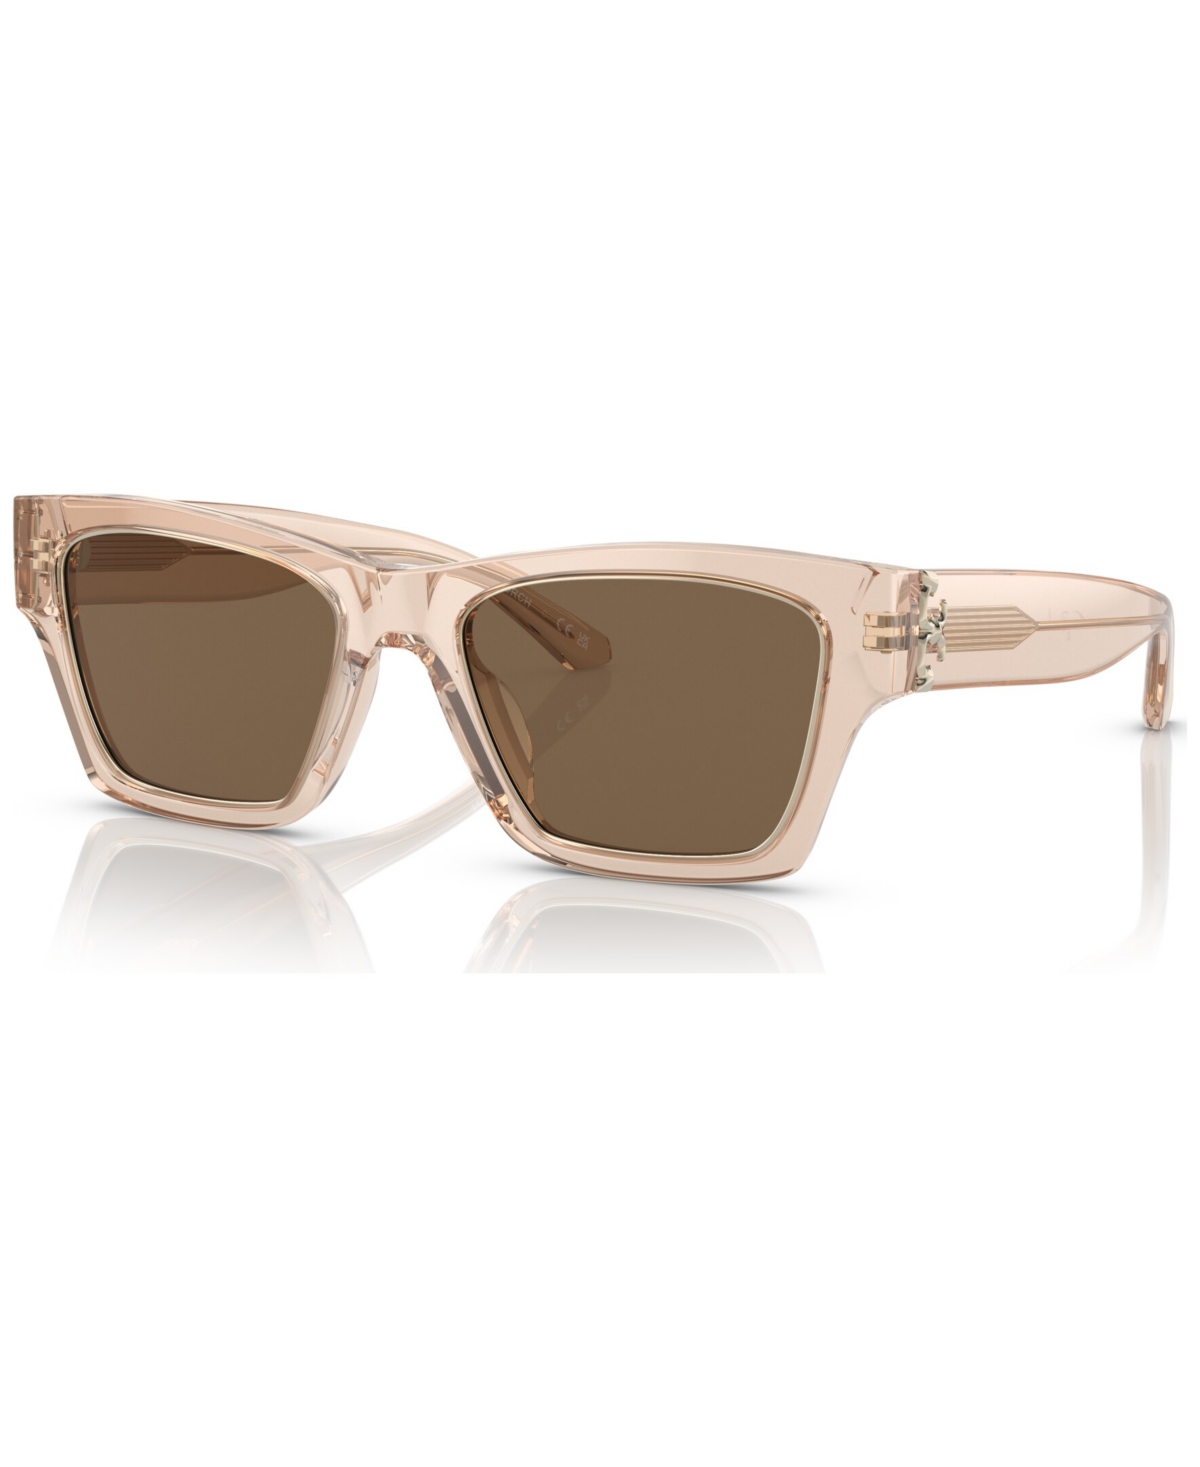 Tory Burch Women's Sunglasses Ty7186u In Transparent Brown